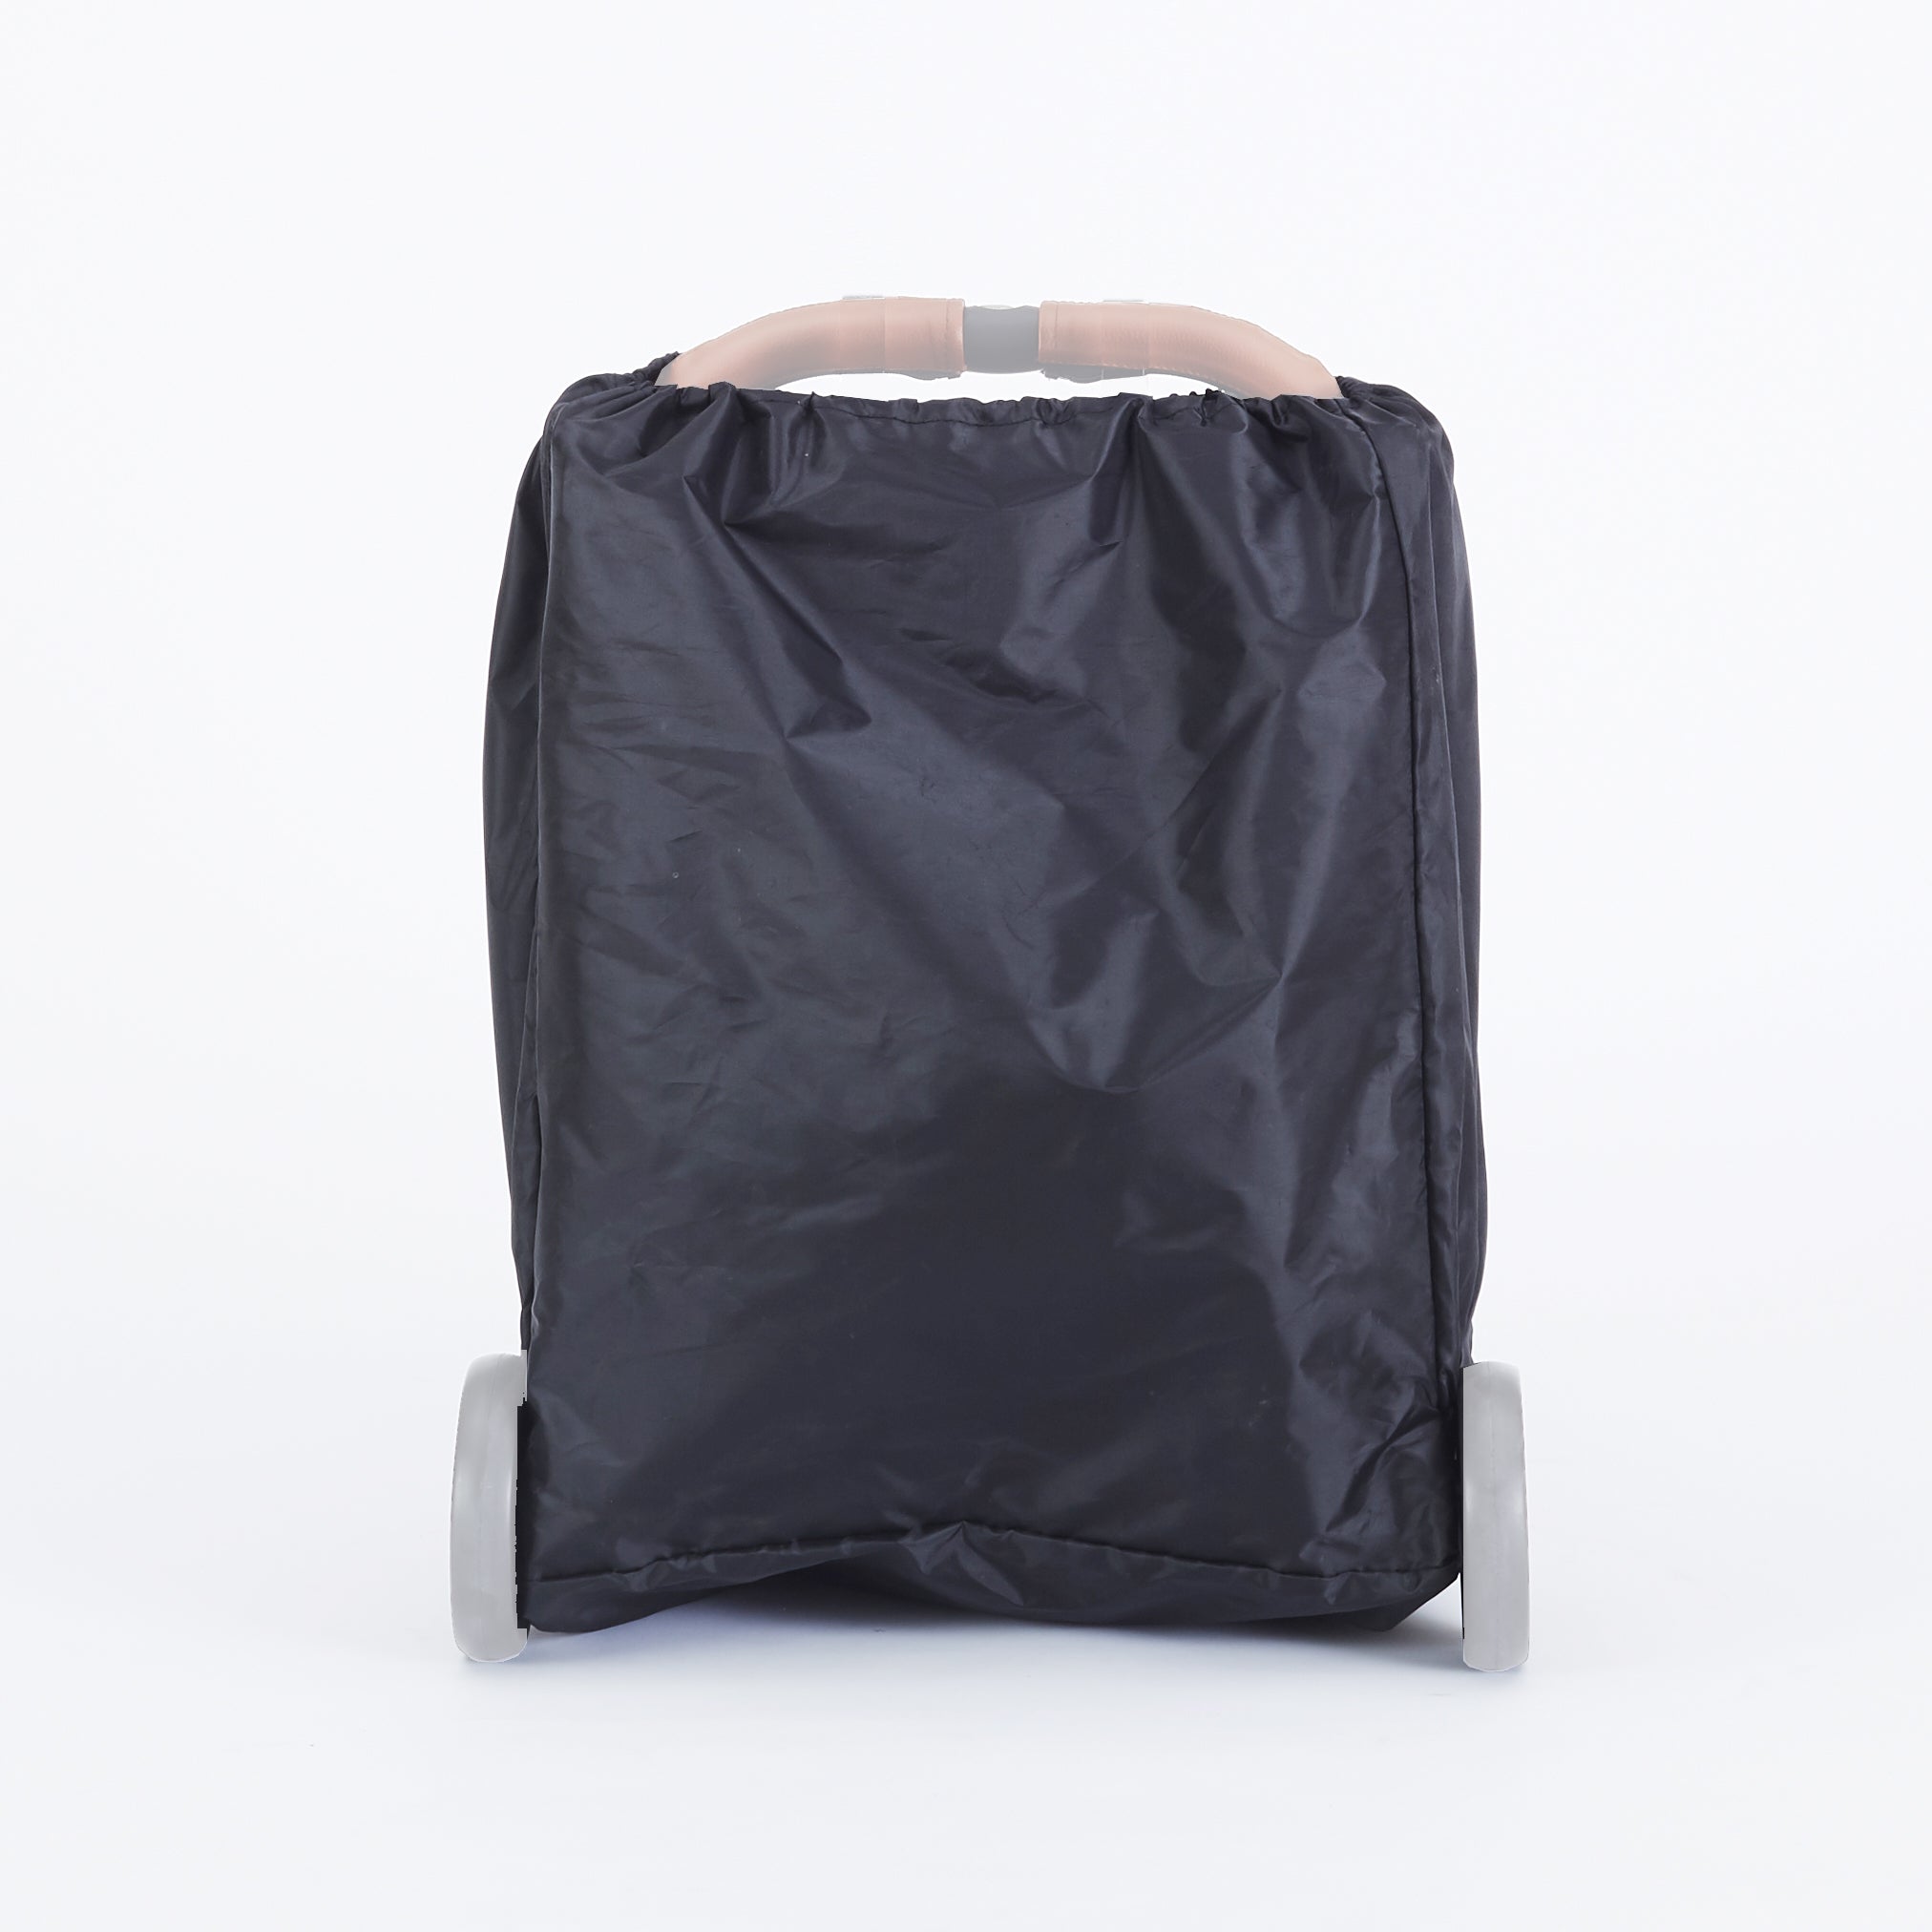 Cover Bag For Stroller